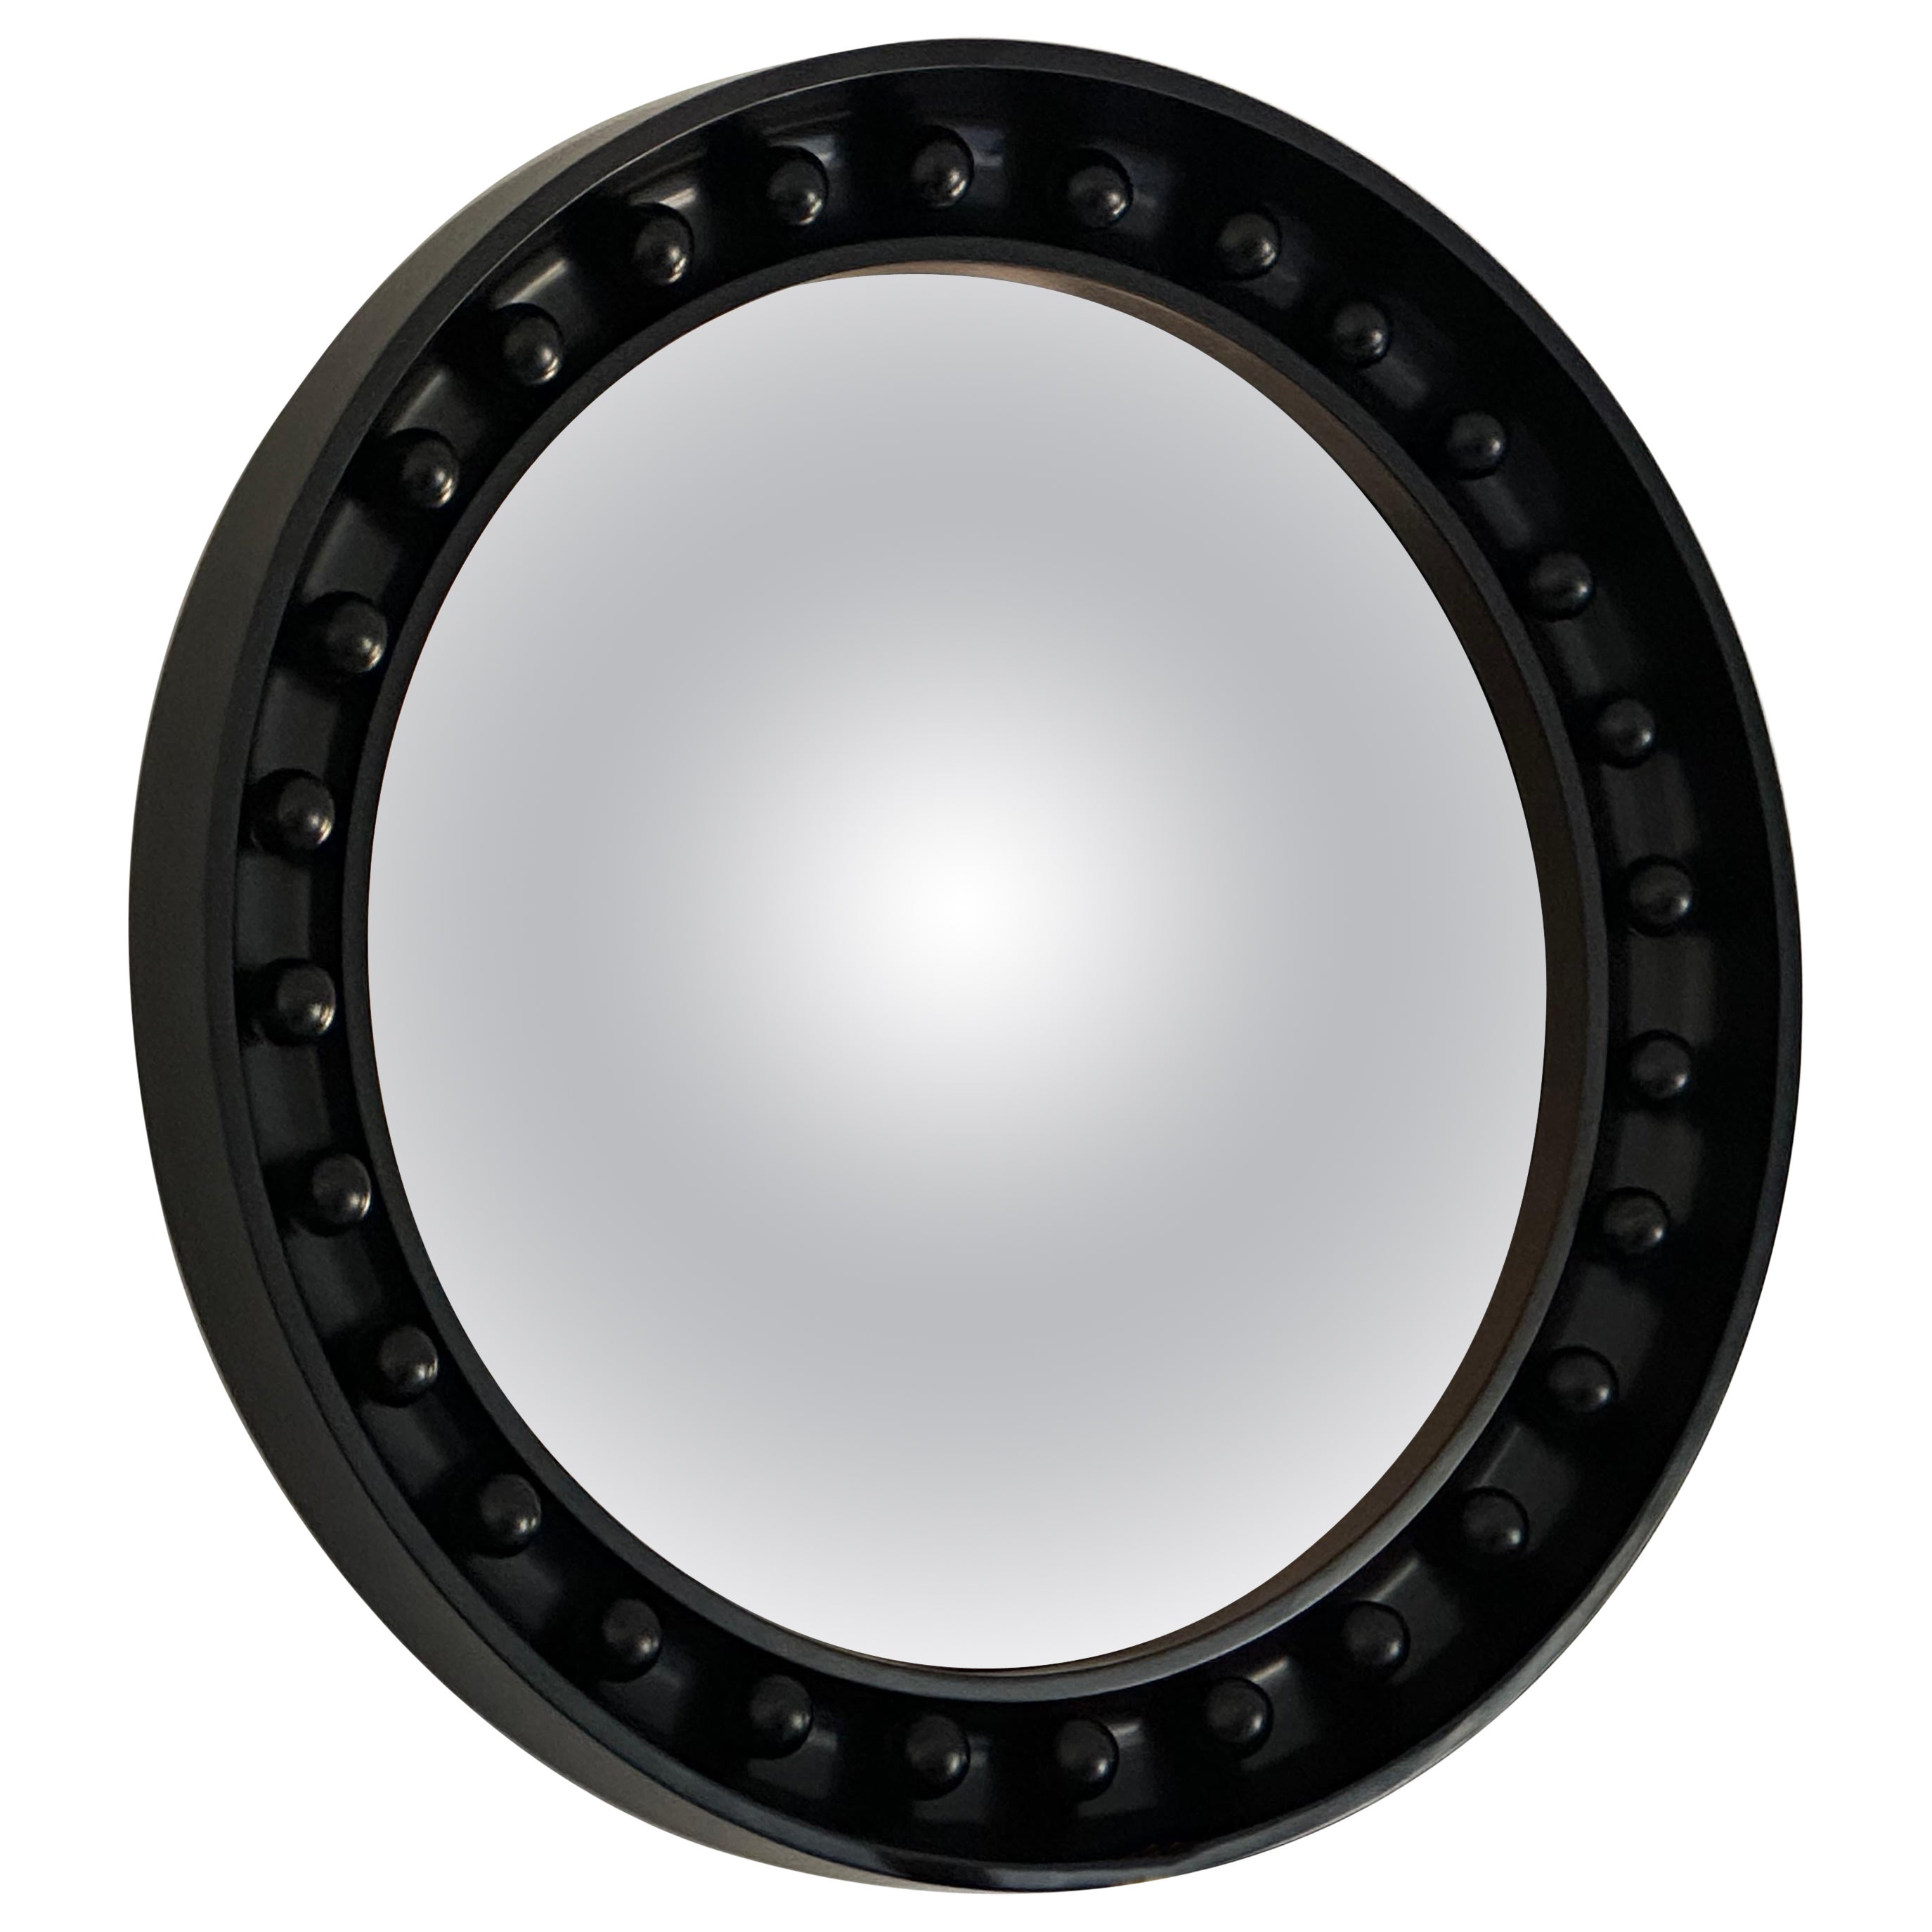 Der Ravello Forte ist ein auffälliger Spiegel, der sich für Flure, Wohnzimmer, Schlafzimmer und Küchen eignet. 

Der Rahmen selbst wird aus Hartholz von Hand gefertigt. Der konvexe Spiegel ist aus eisenarmem 6-mm-Glas gefertigt, was seine Klarheit